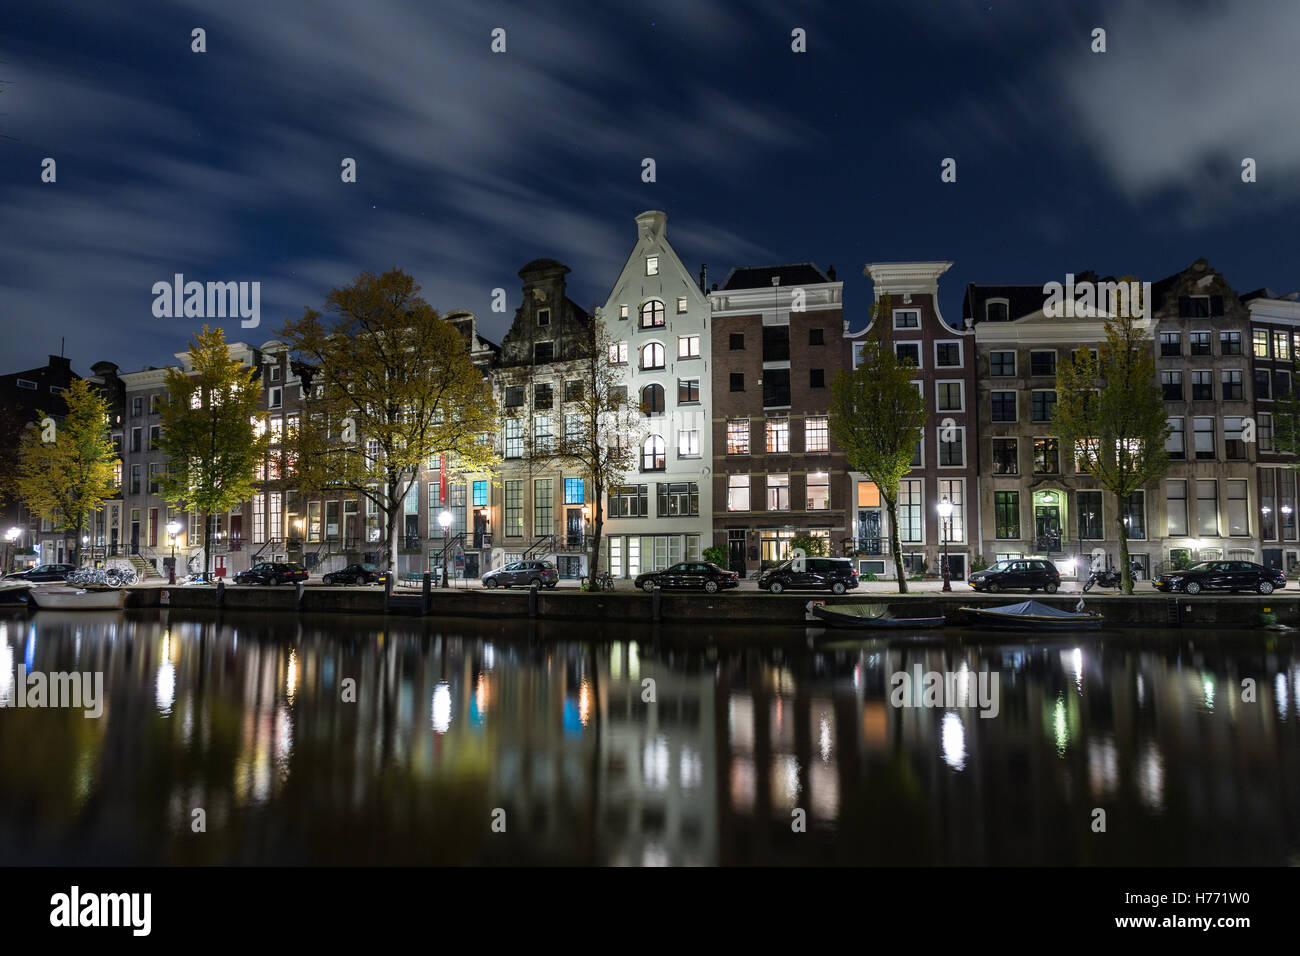 Case di Amsterdam, Olanda di notte si riflette nel canale Foto Stock